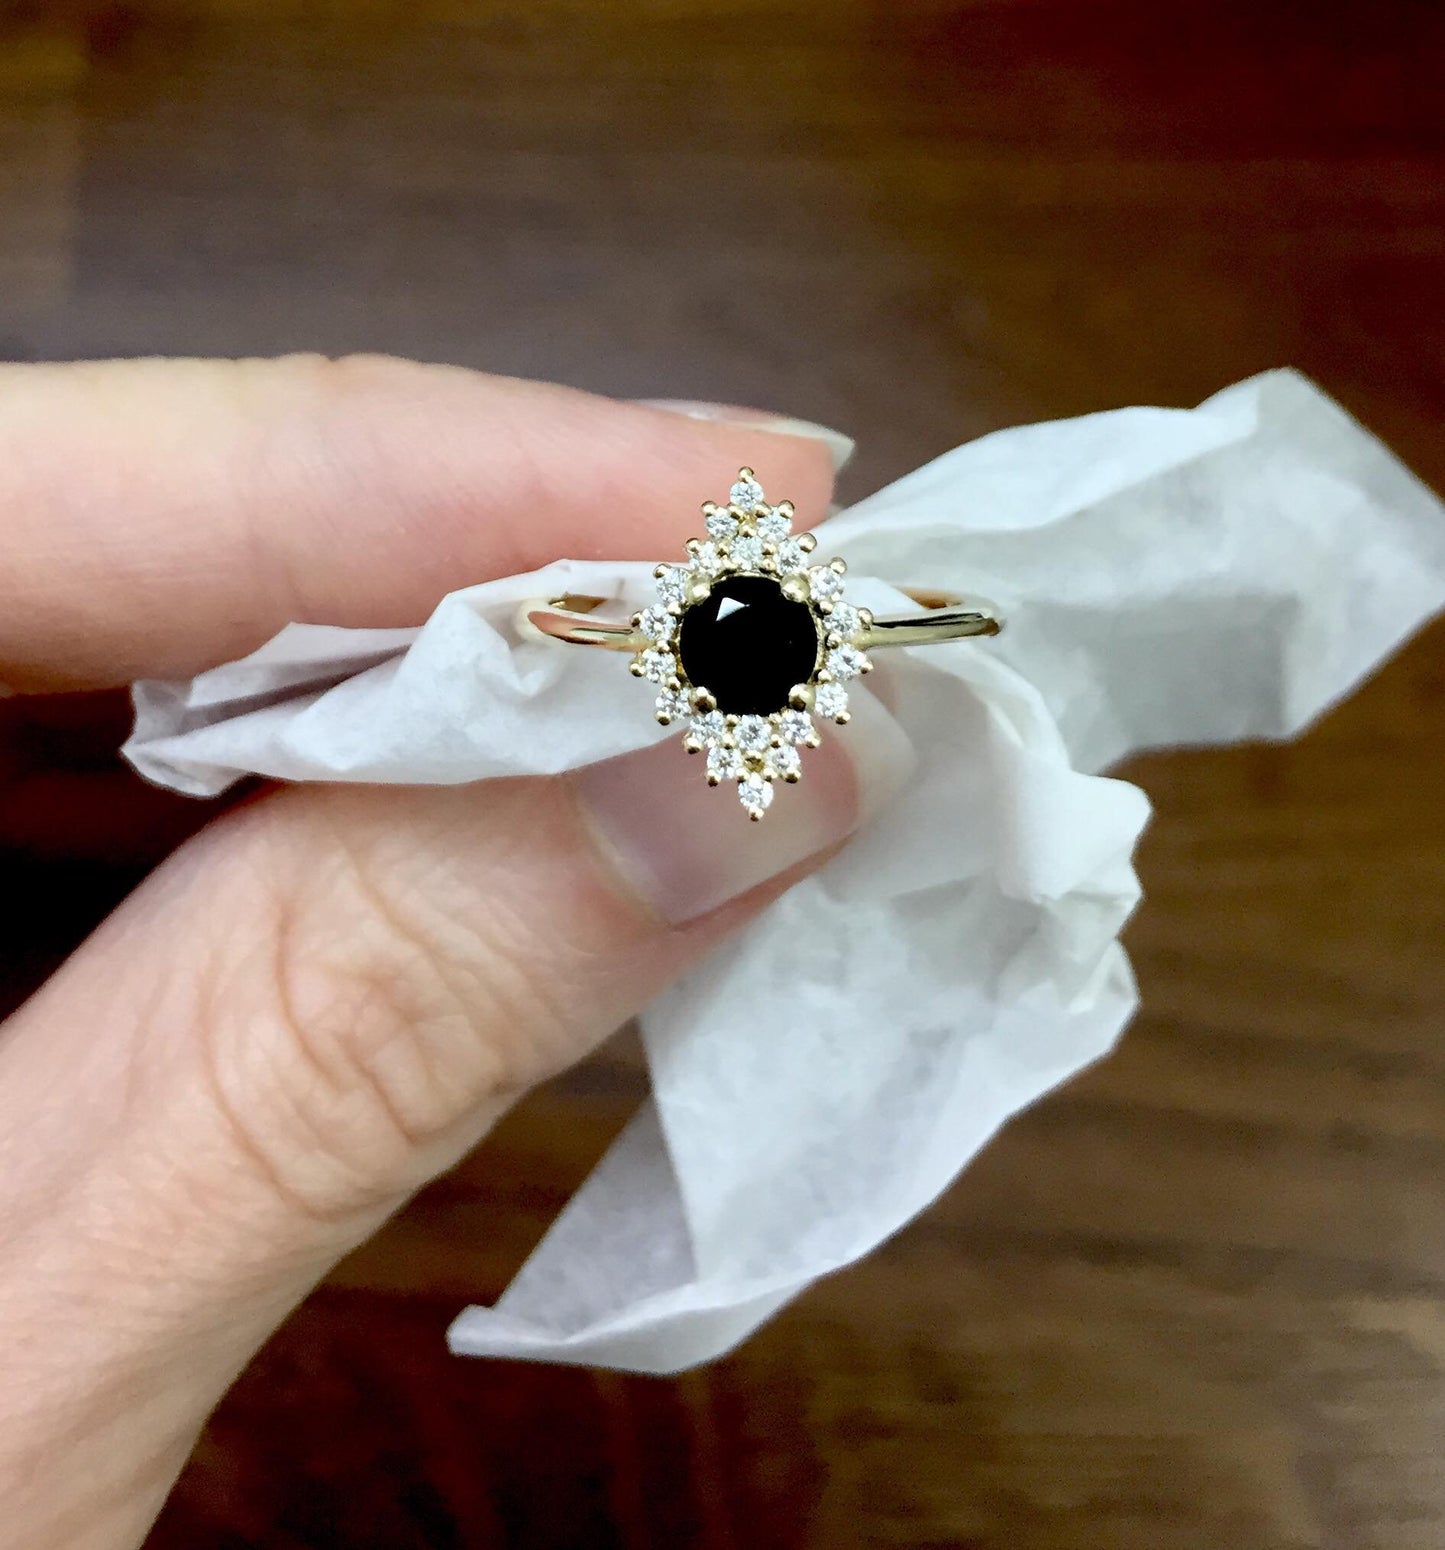 Unique Design Black Diamond Engagement Ring in 14k Gold